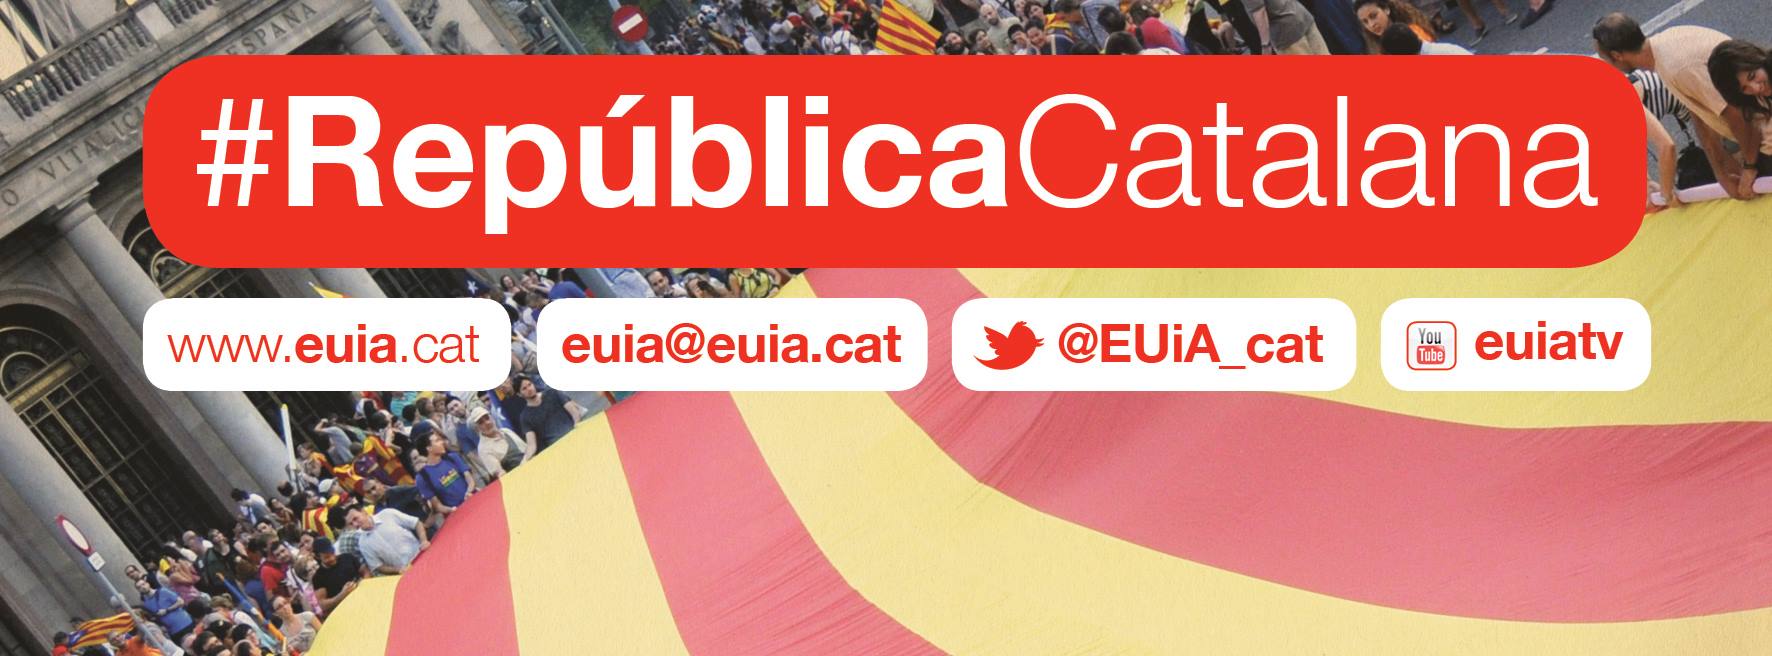 Référendum en Catalogne : Les socialistes (PSC) soutenus par la droite post-franciste (PP)